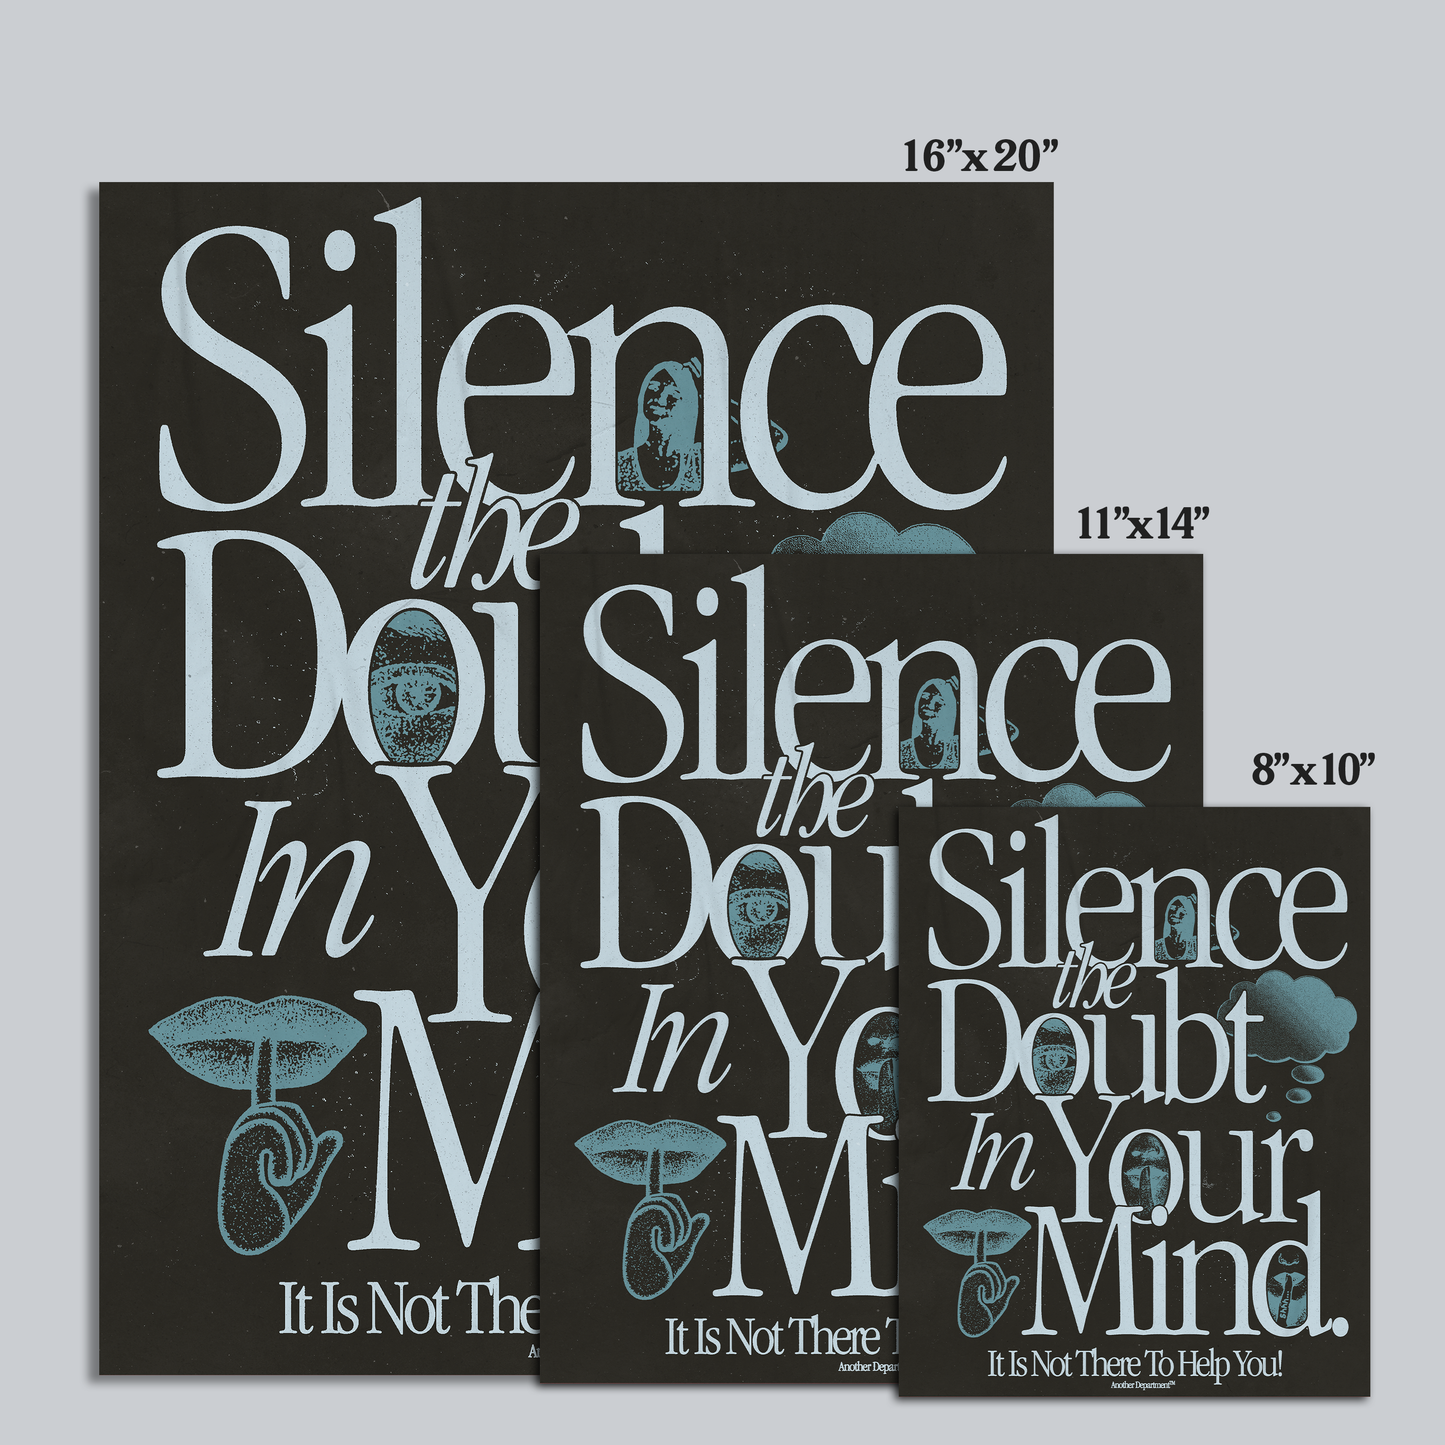 195 - Silence the Doubt